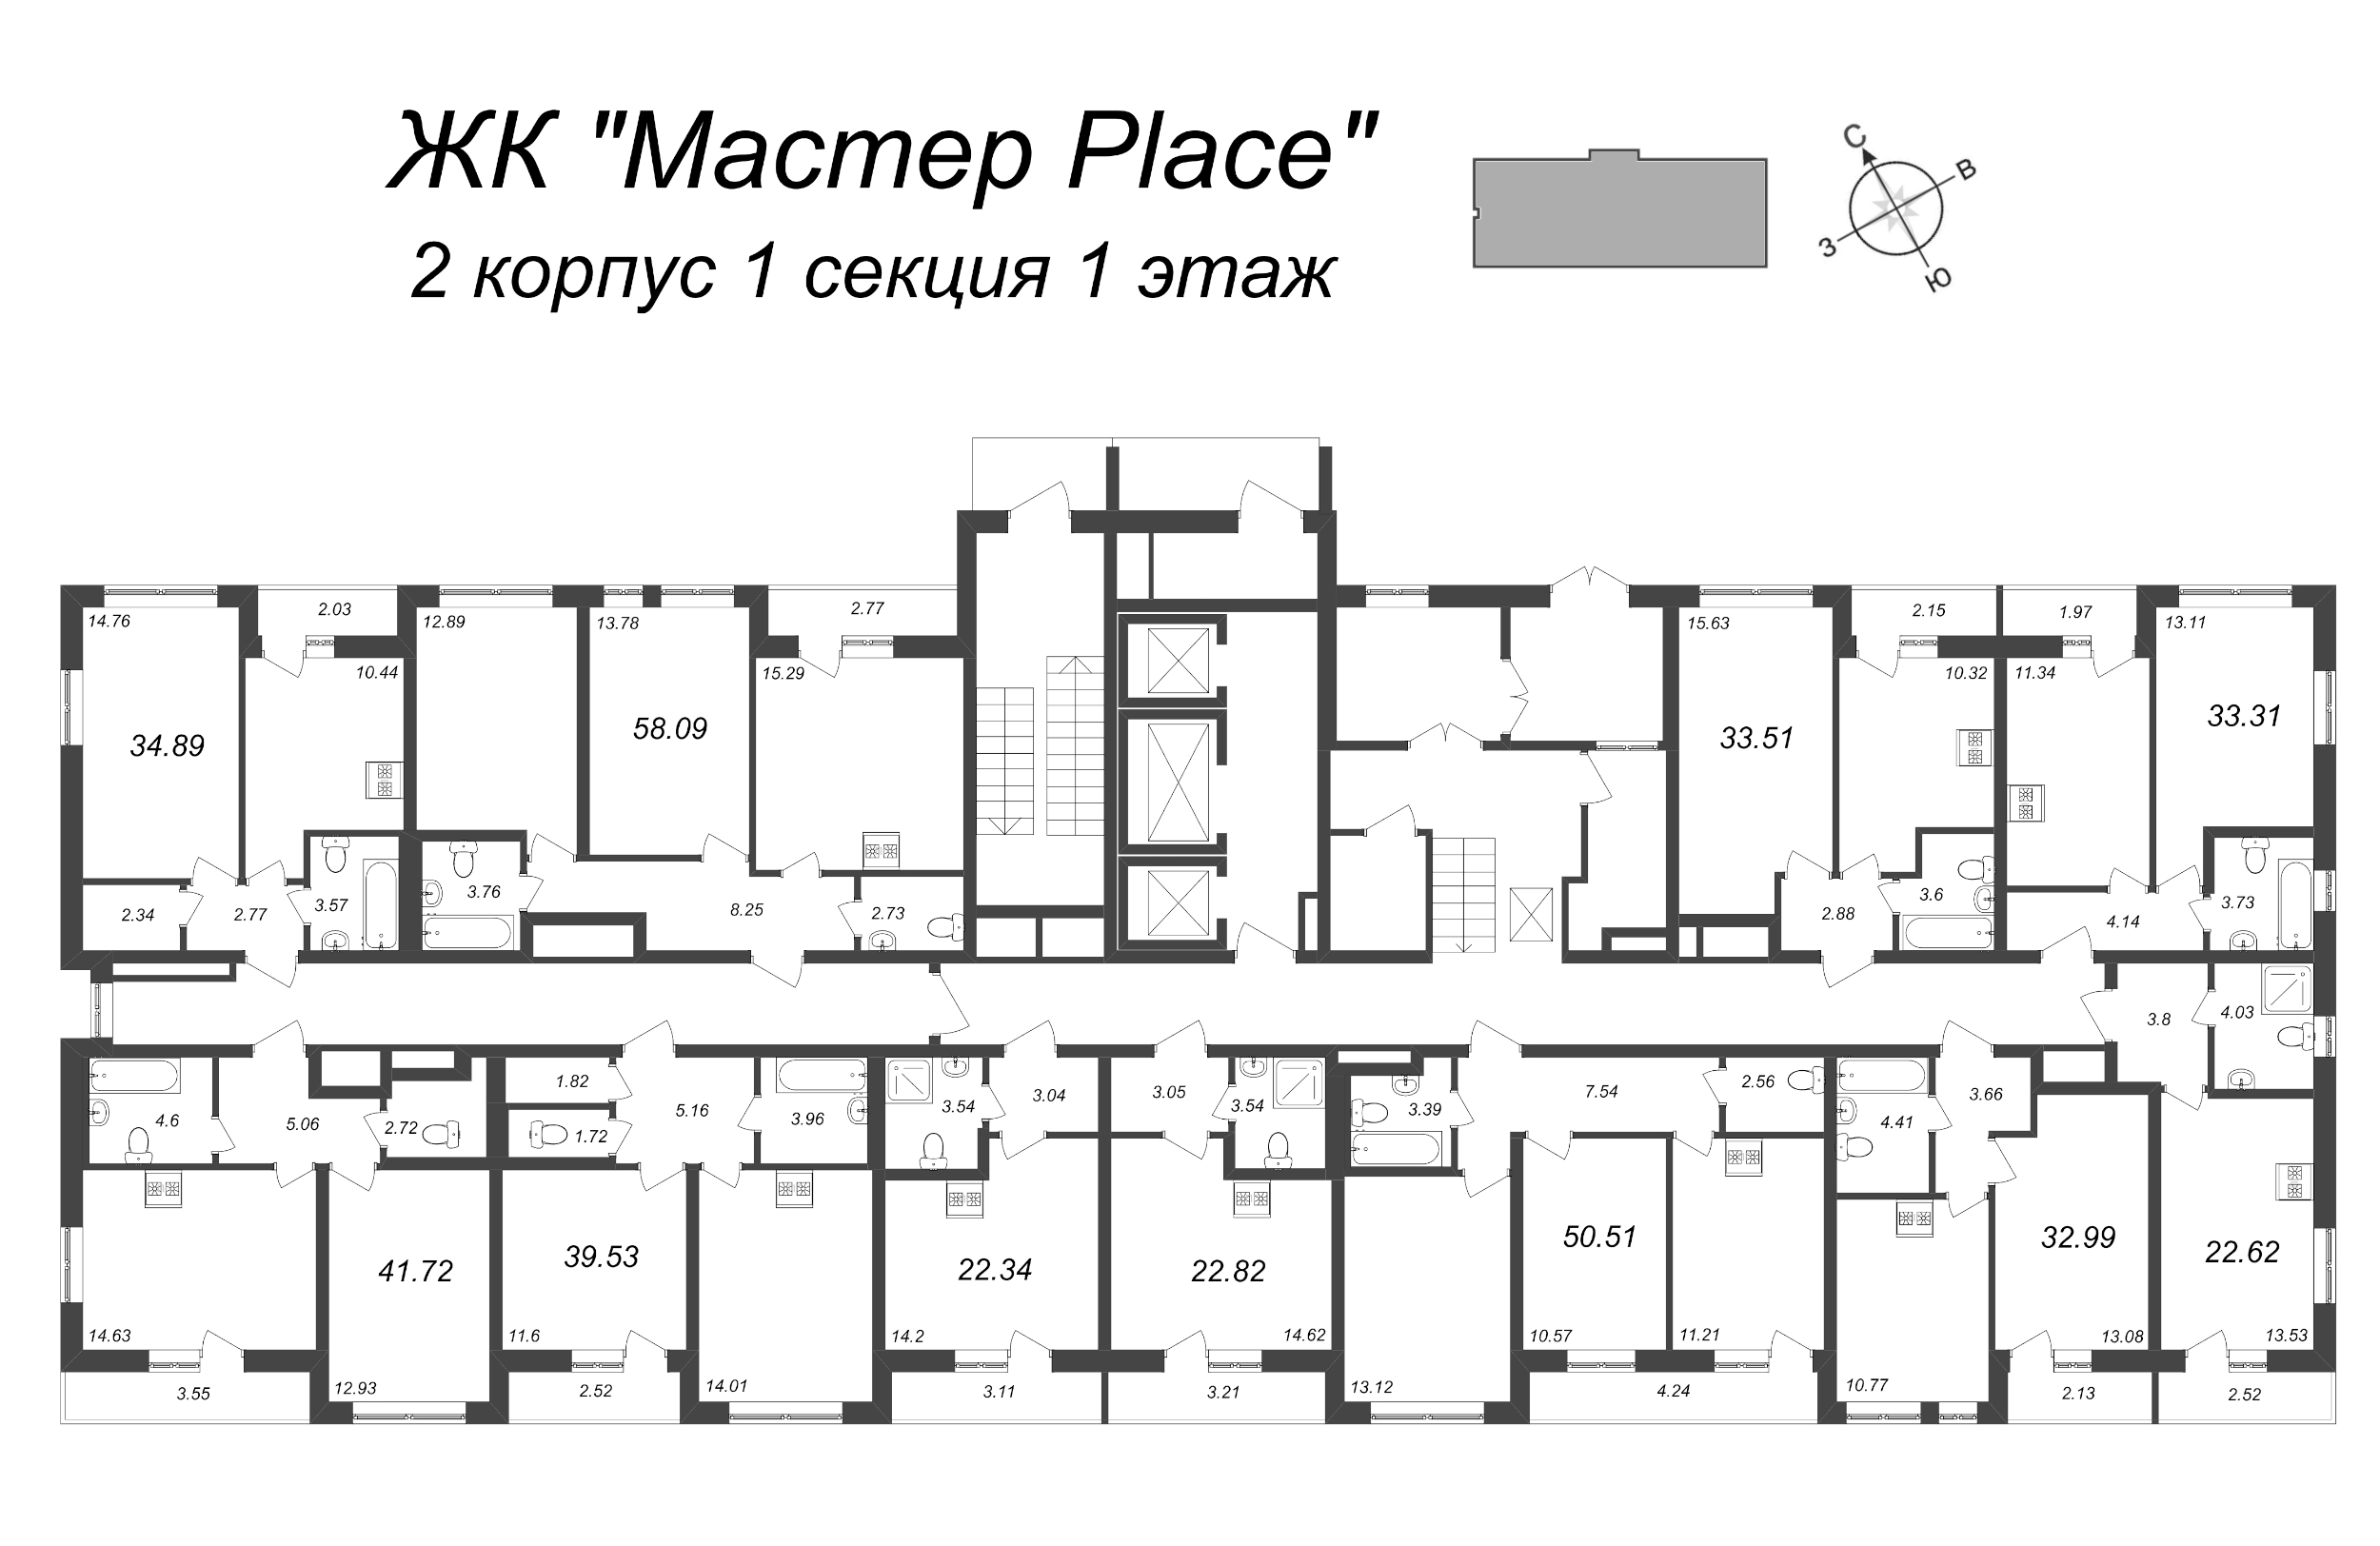 2-комнатная (Евро) квартира, 39.53 м² в ЖК "Master Place" - планировка этажа